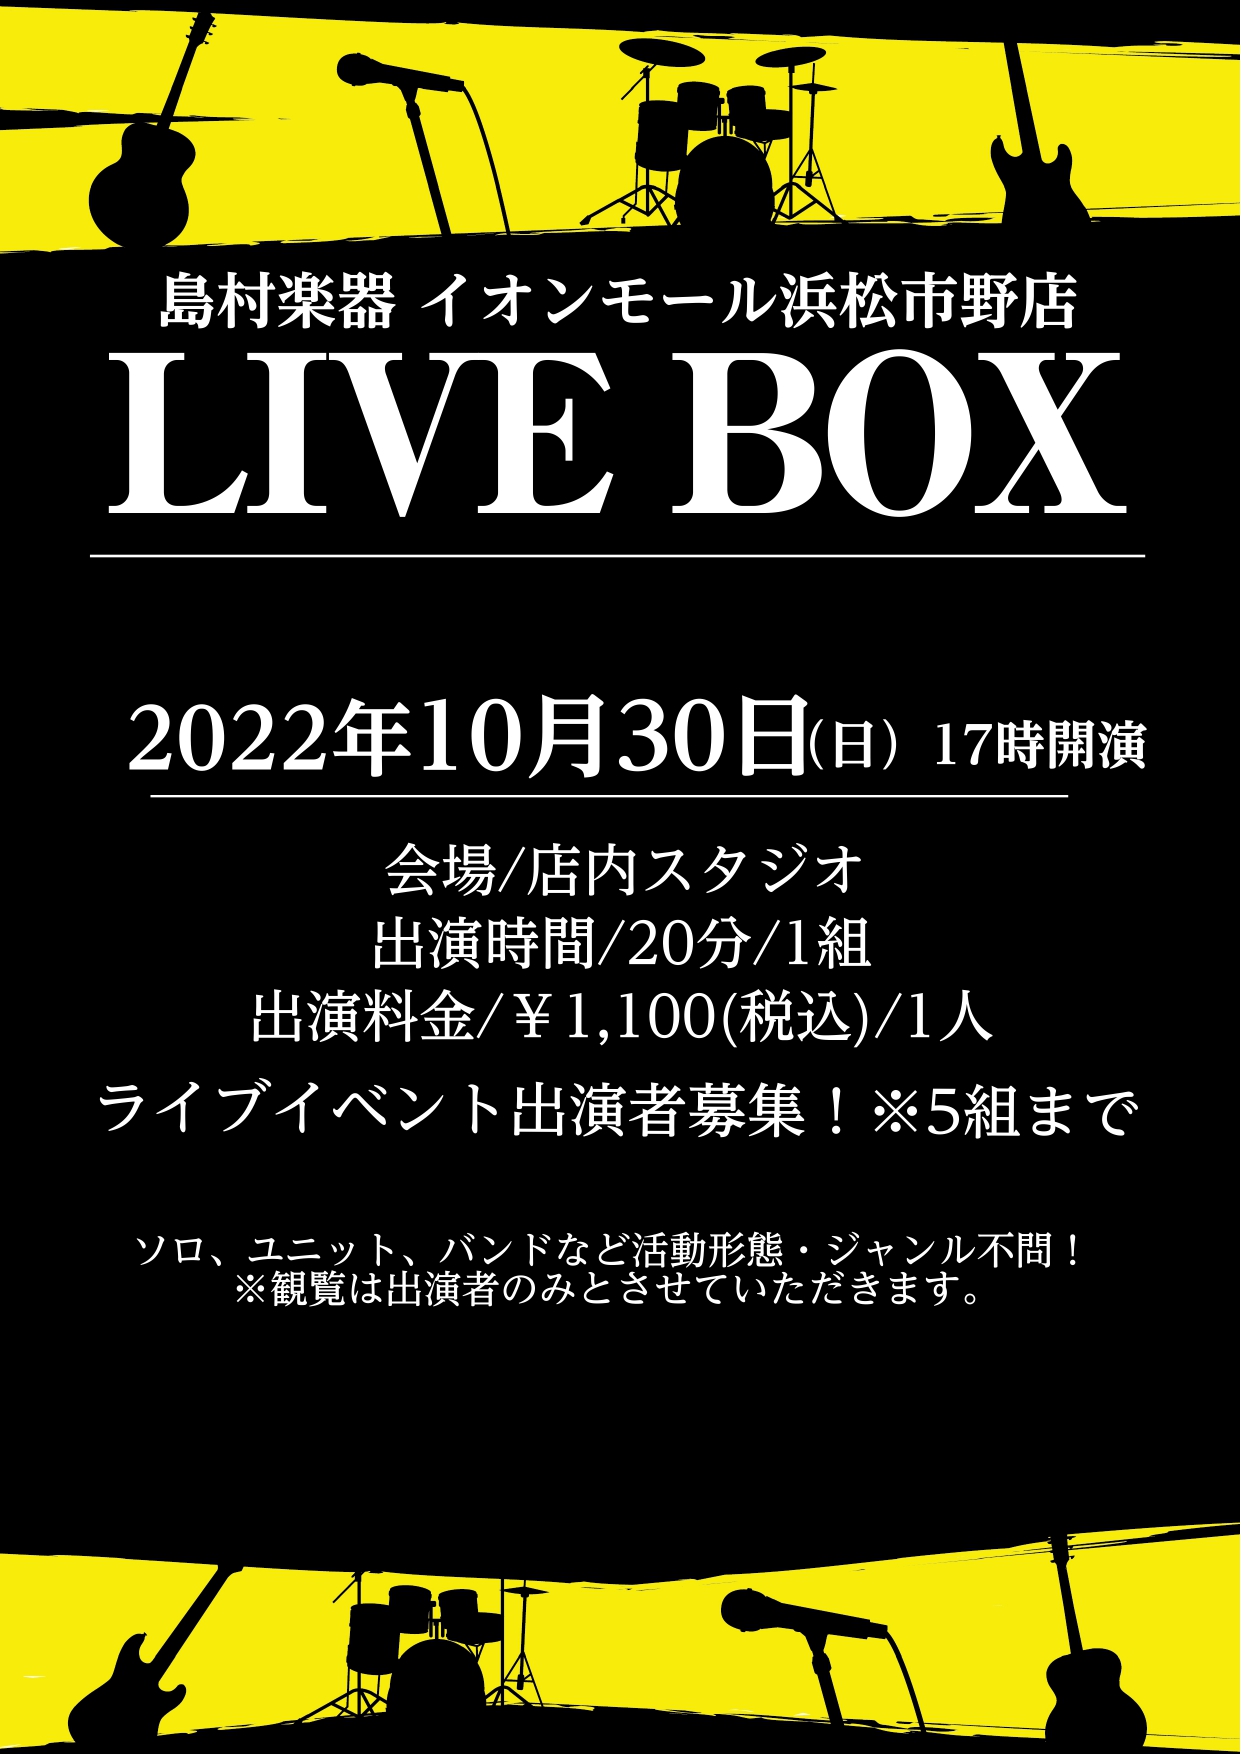 LIVE BOXとは LiveBoxとは島村楽器イオンモール浜松市野店で行っているライブイベントです。 ソロ、ユニット、バンドなど活動形態は問いません。 更にアコースティック、ロック、ジャズ、インスト、アカペラなどジャンルも一切問いません。 楽しみたい方、人前で披露したい方、ドシドシご応募下さい！！ […]